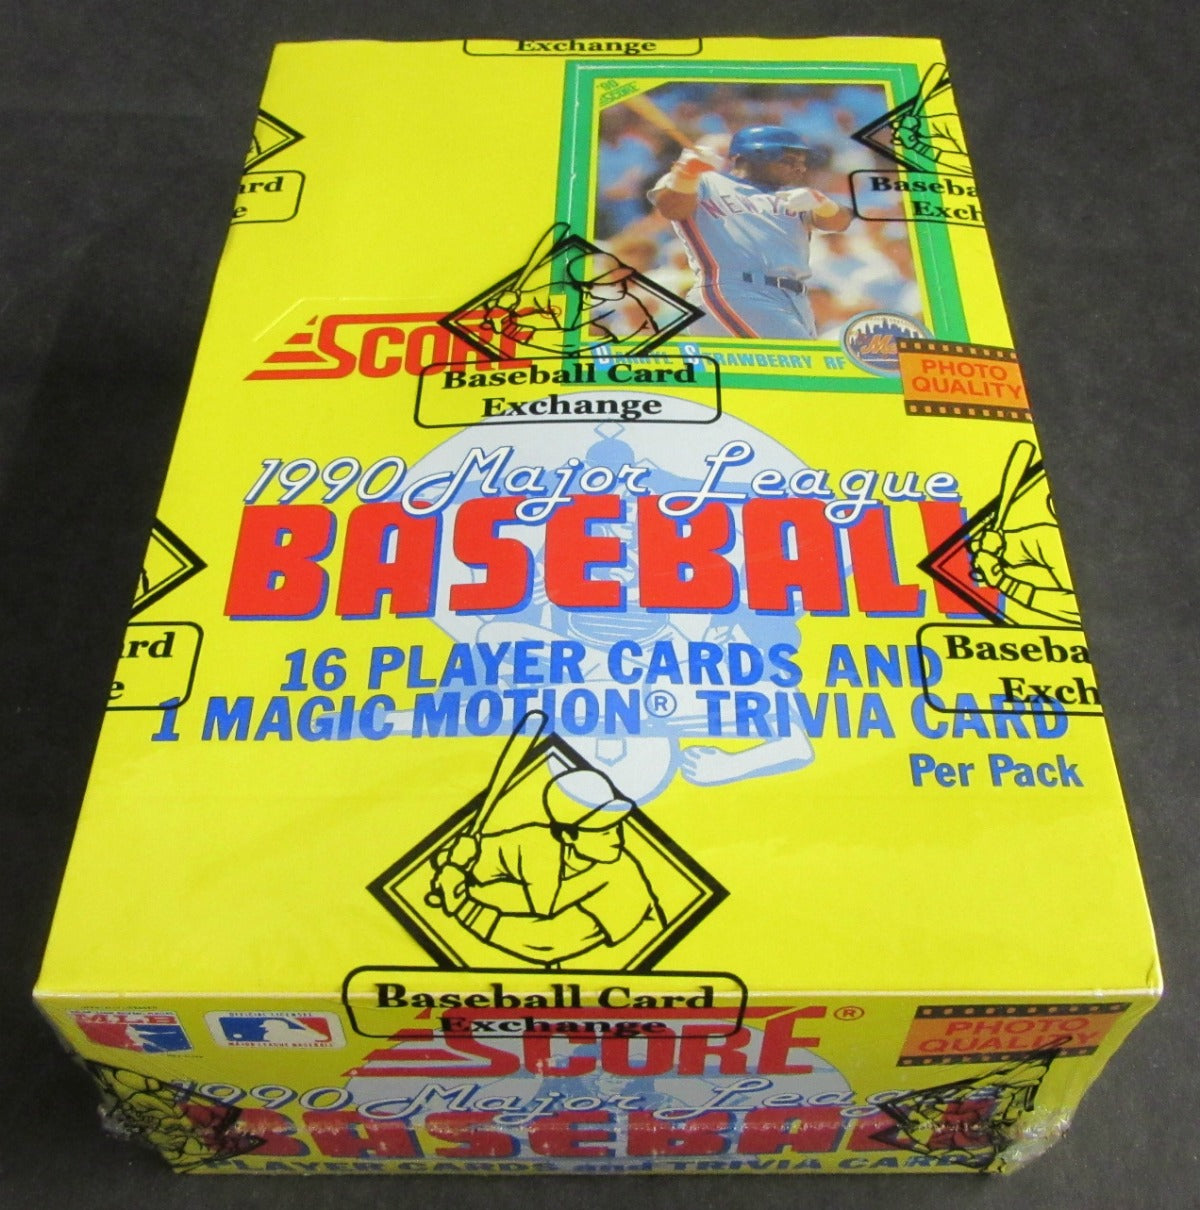 1990 Score Baseball Unopened Box (FASC)